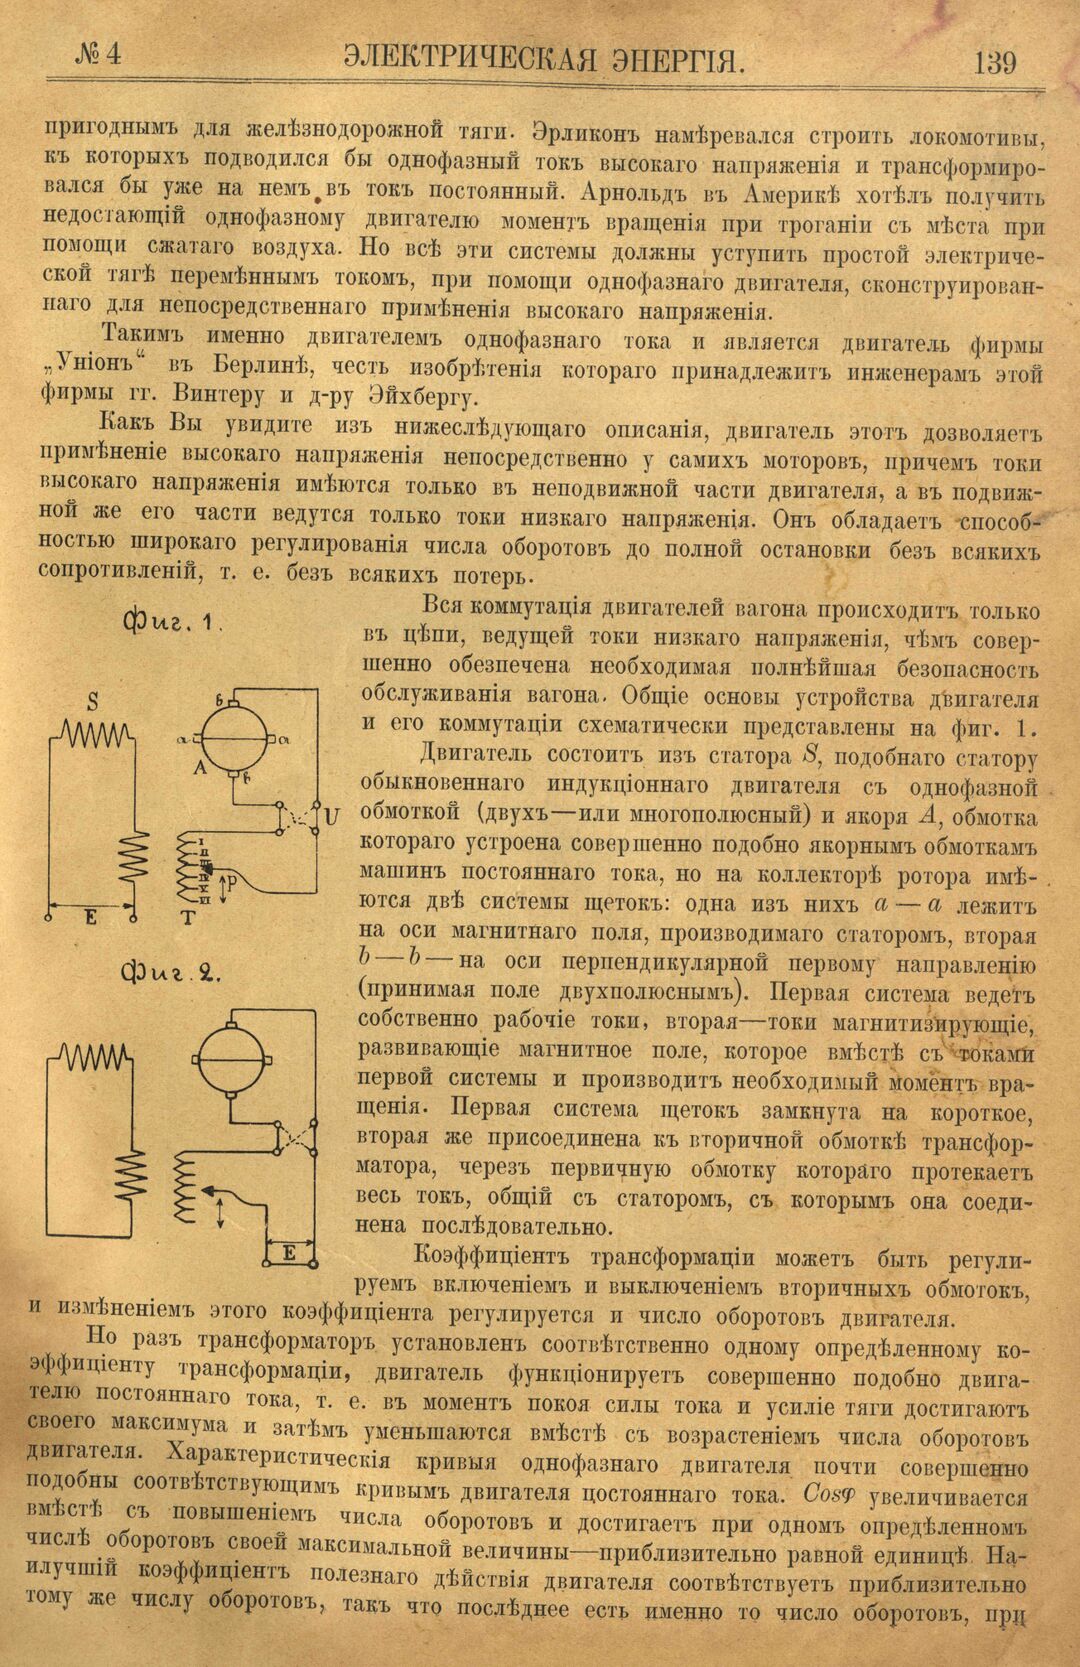 Рис. 1. Журнал Электрическая Энергiя, 4 номер, апрель, 1904 года, страница 139